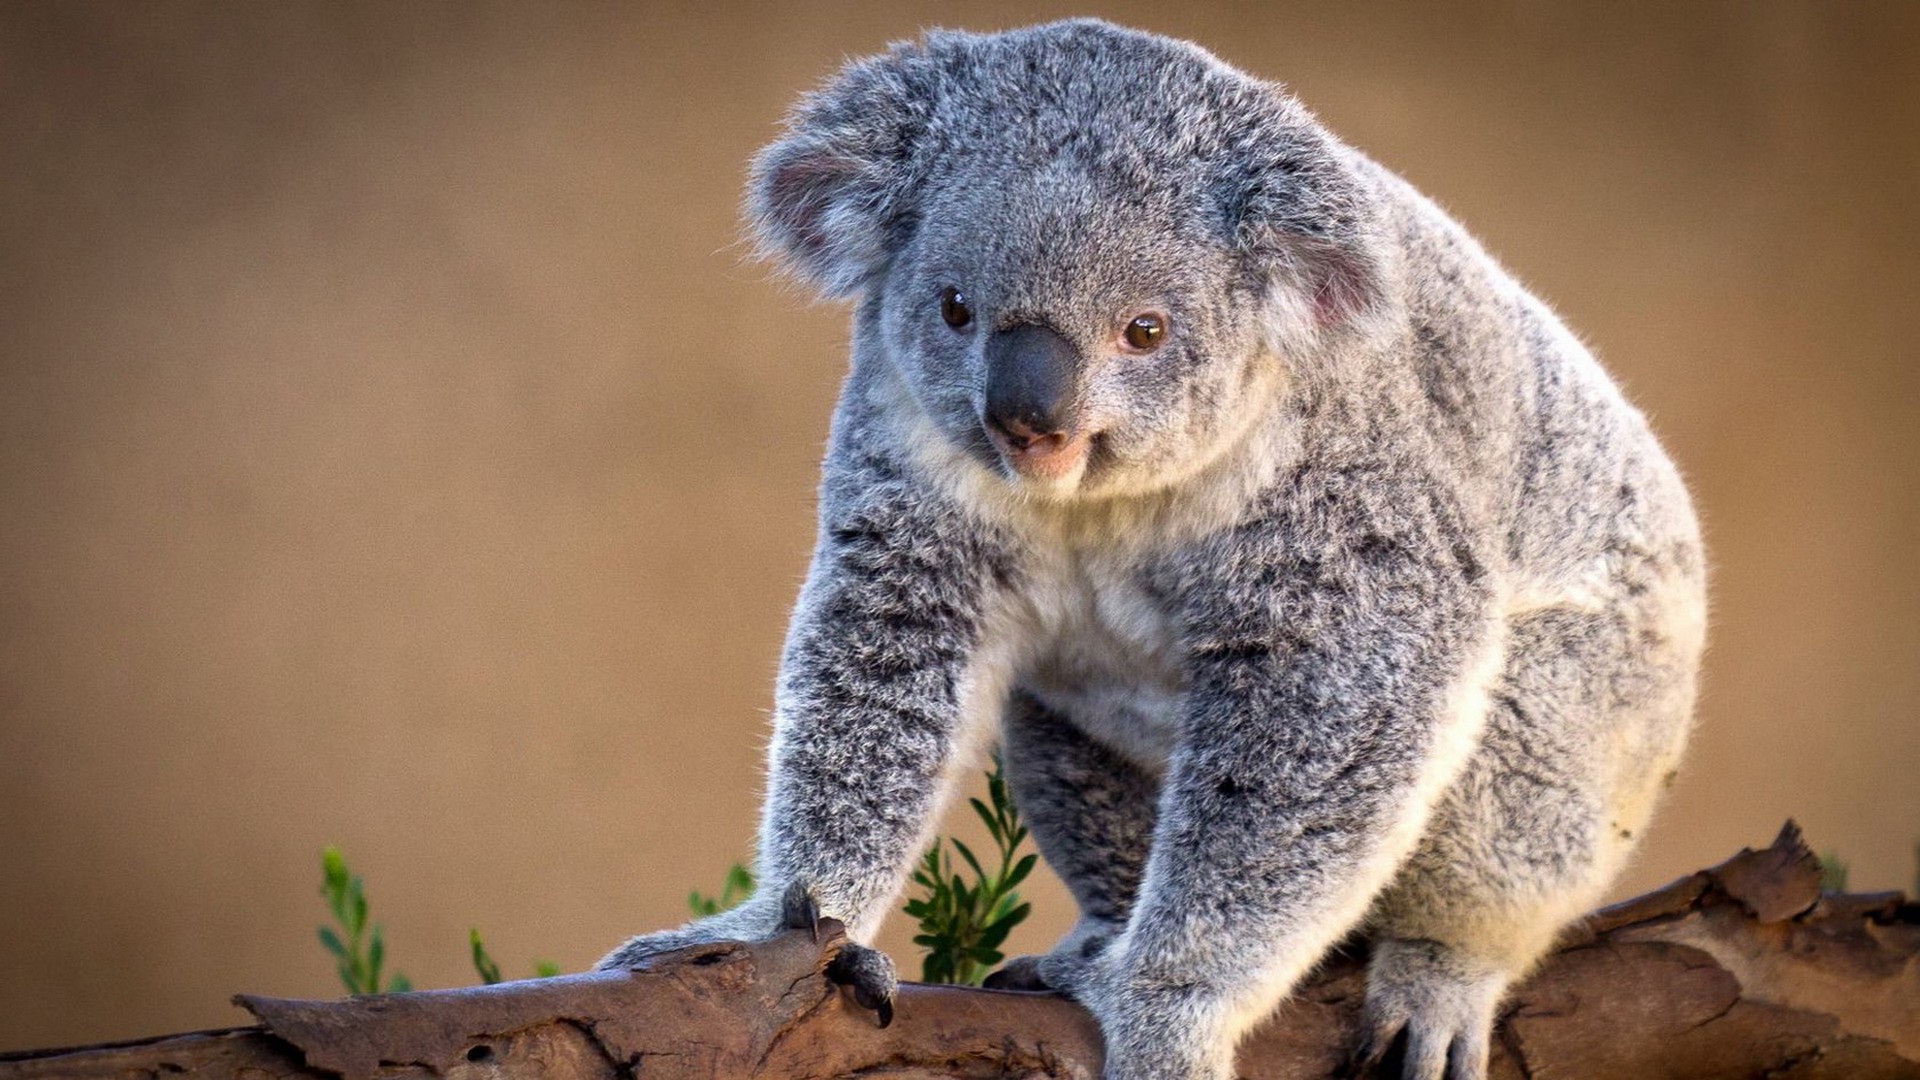  Koala HQ Background Images